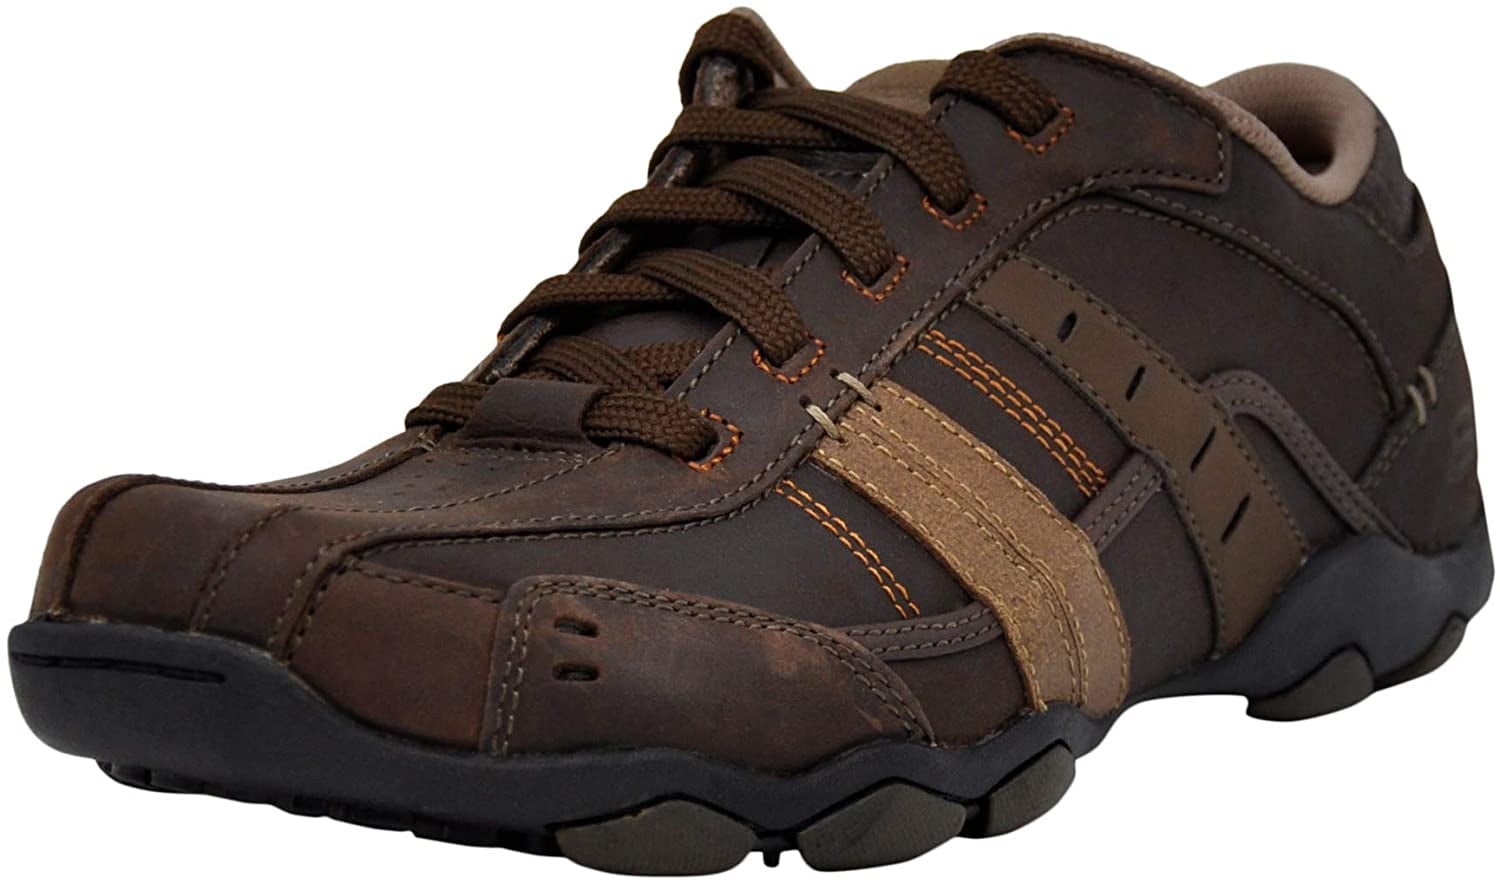 skechers diameter vassell men's shoes wide width